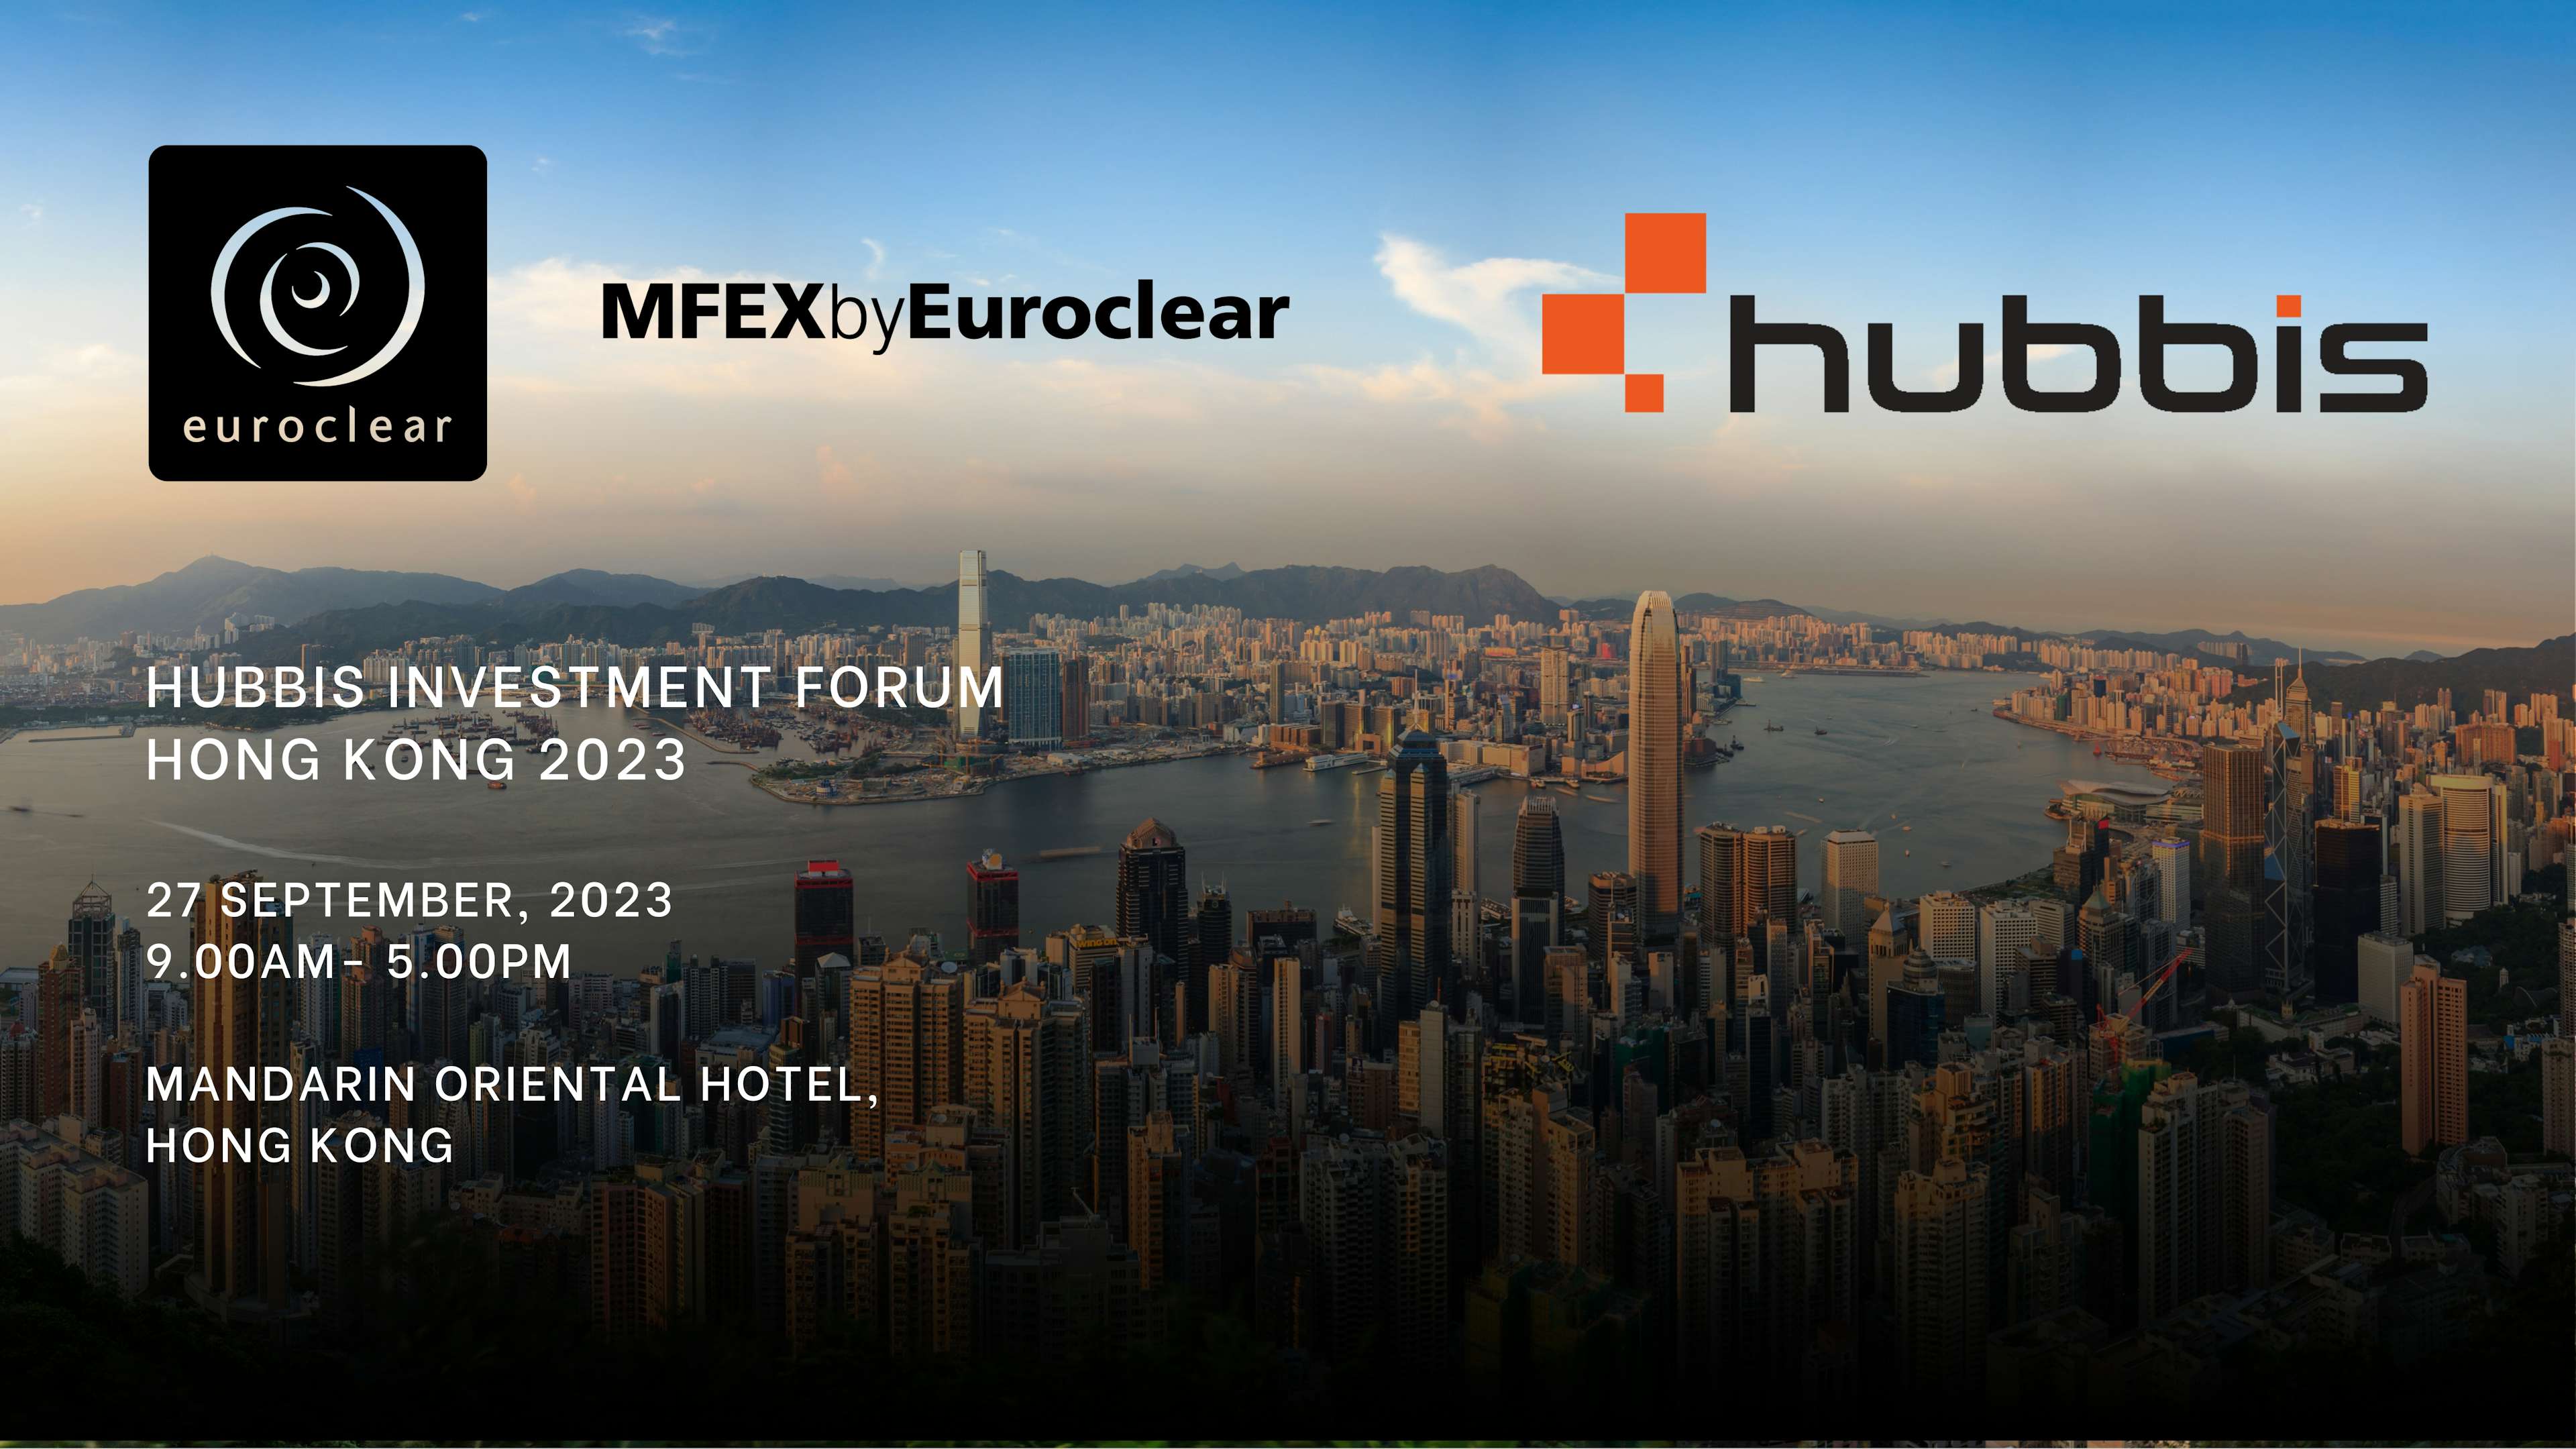 HUBBIS INVESTMENT FORUM Hong Kong 2023